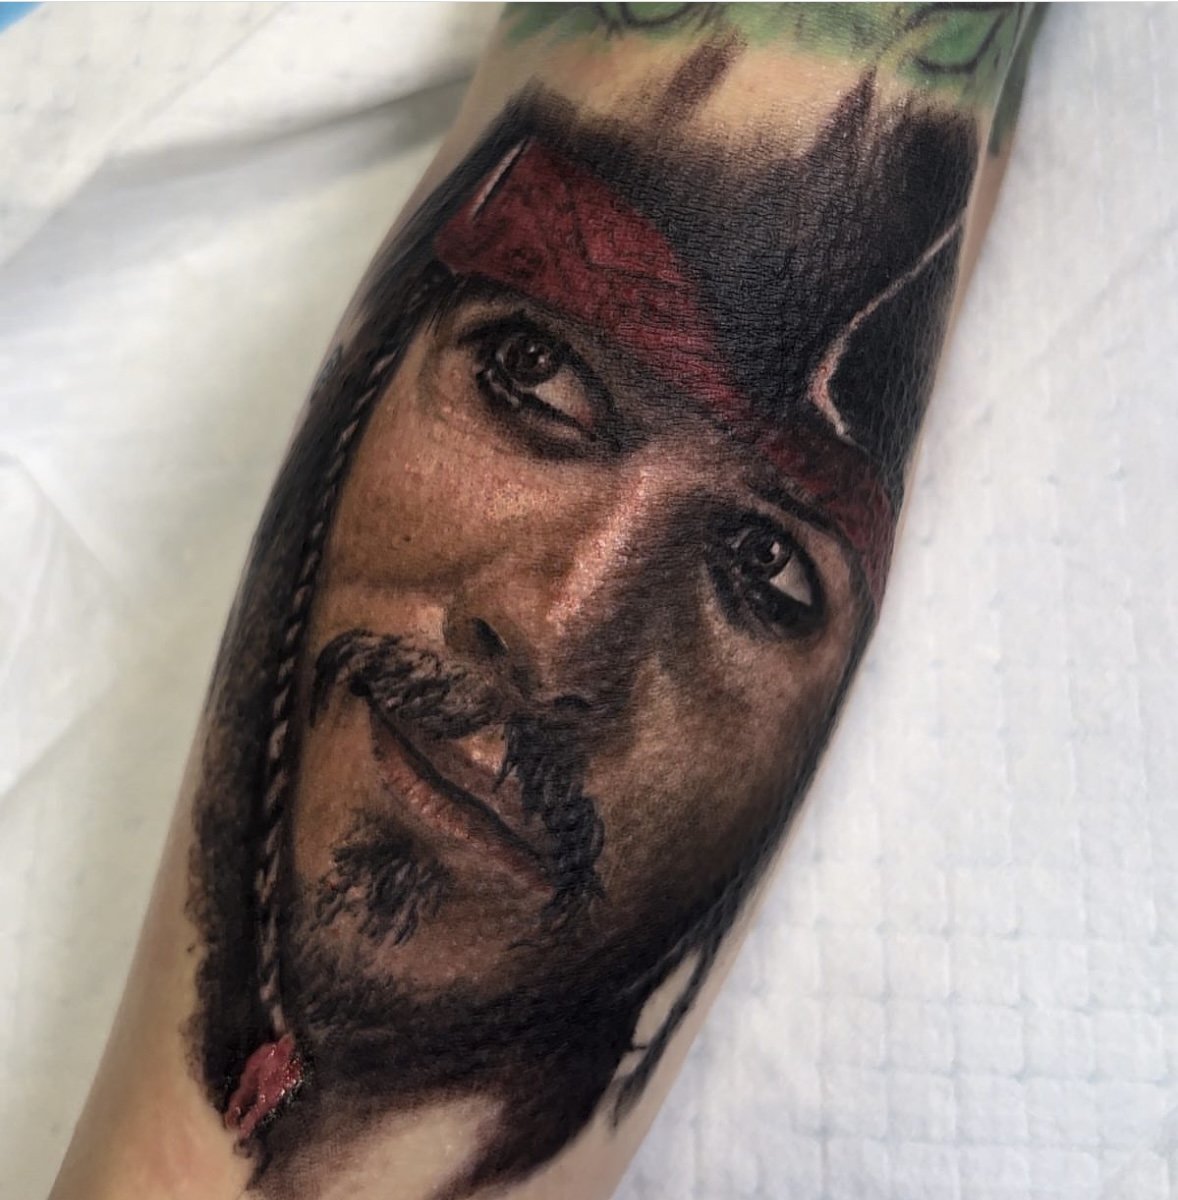 Caribbean Art Tattoo on X: 